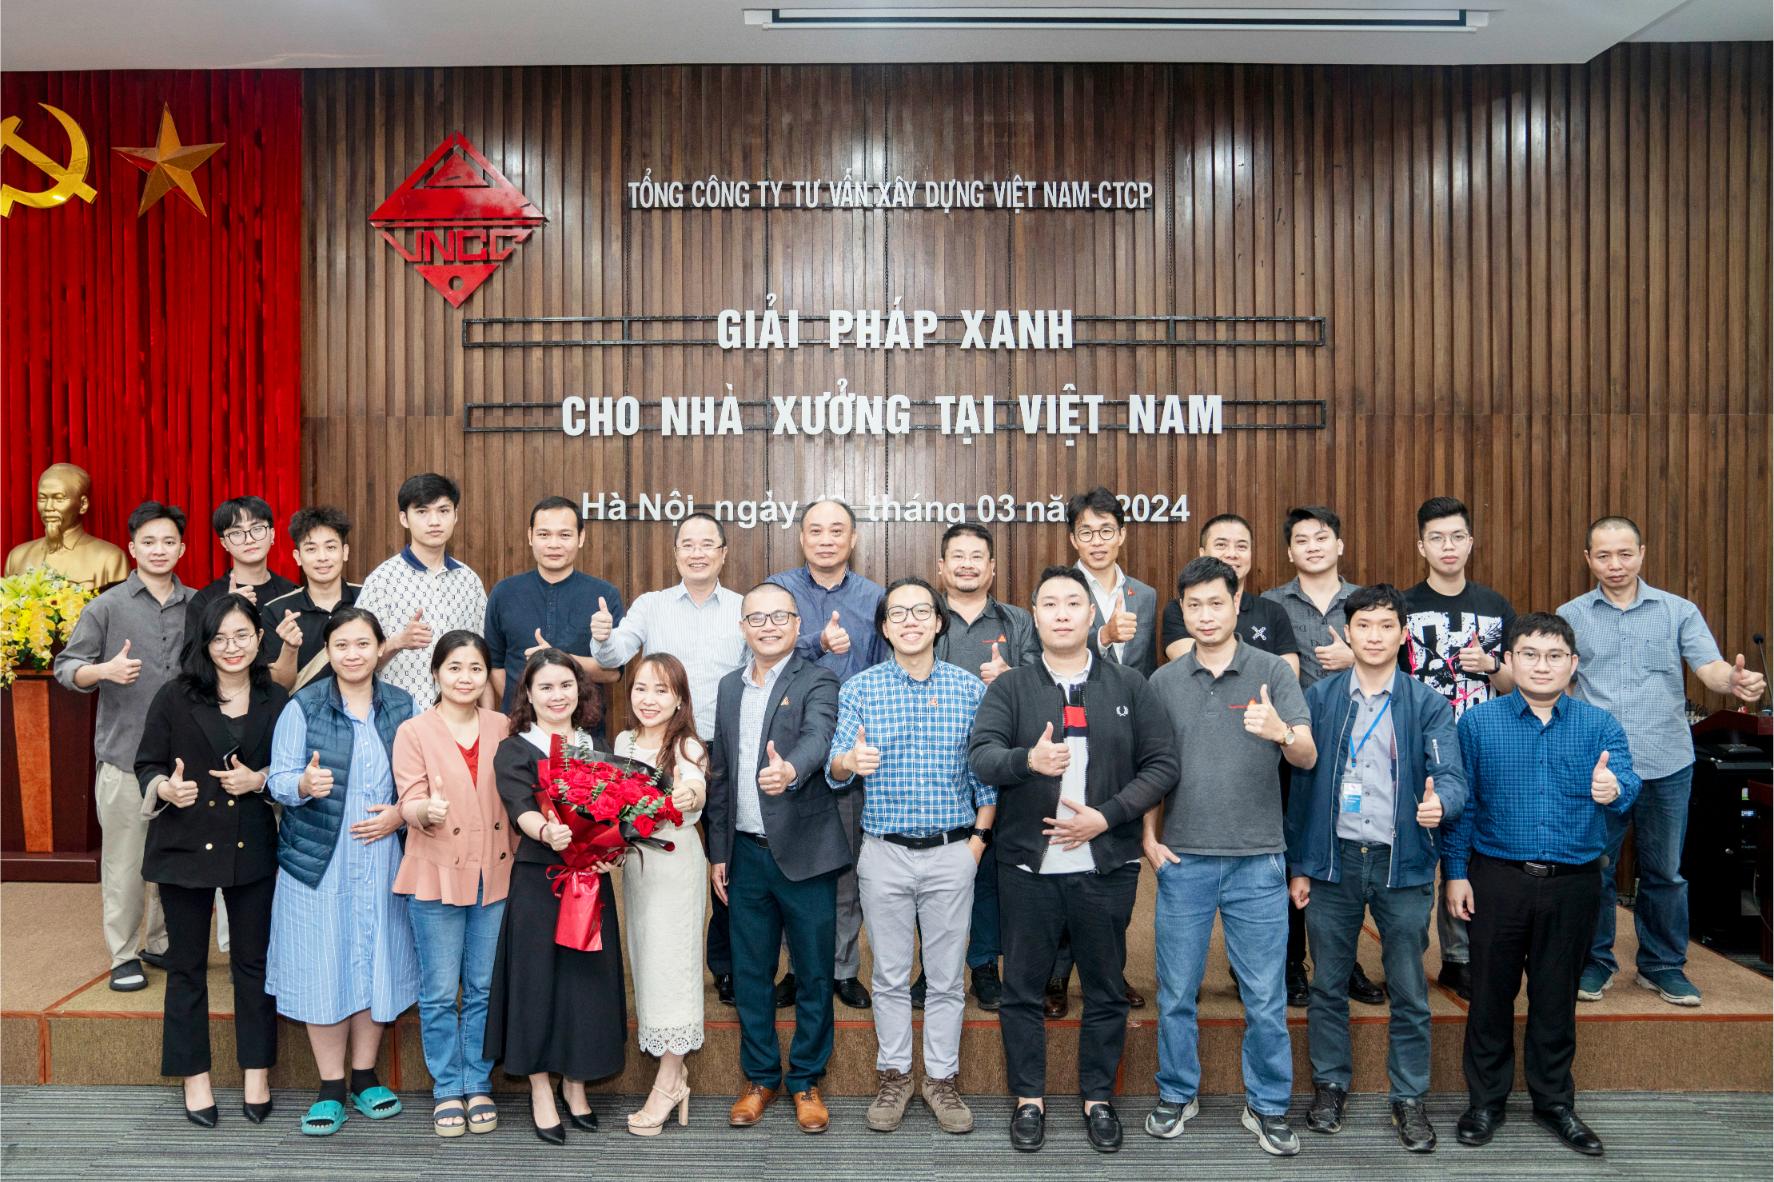 Ảnh 1 Giải pháp vật liệu xanh cho các công trình nhà xưởng tại Việt Nam